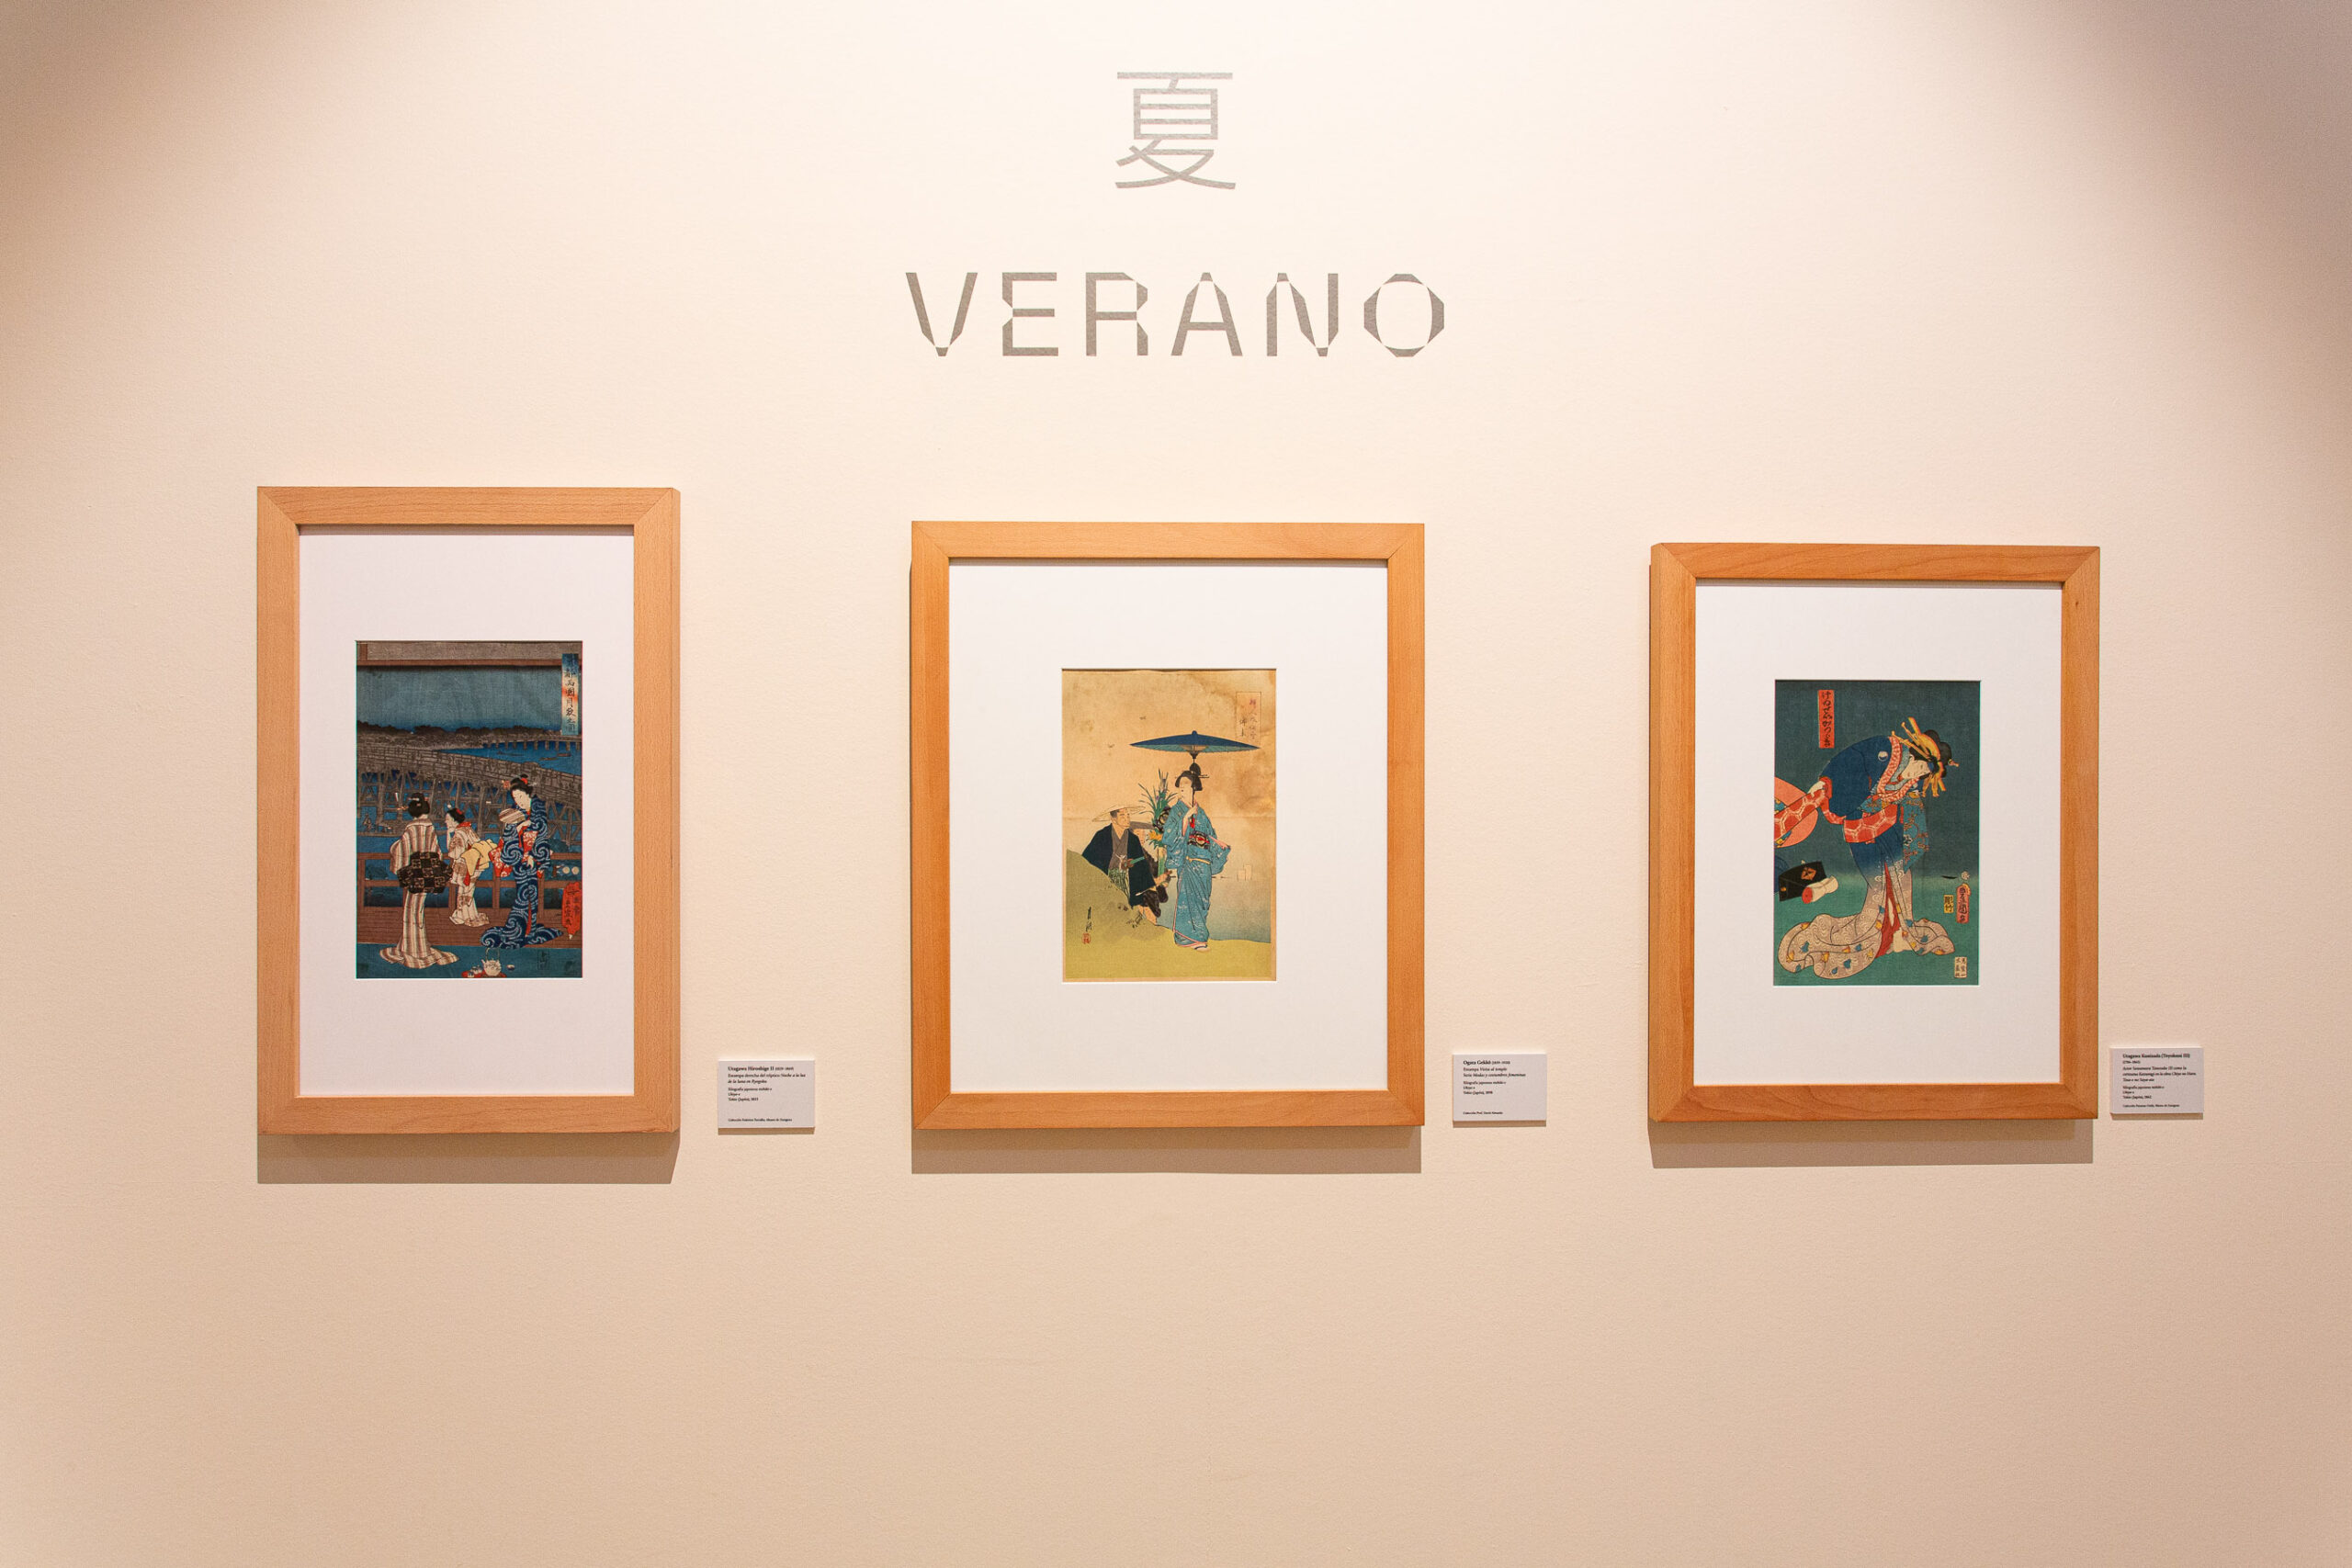 Estampas procedentes de colección Torralba, D. Almazán y Pasamar-Onila. Exposición "Kimono.Piel de seda".  Foto: O. Pedraza. Museo de Zaragoza. 